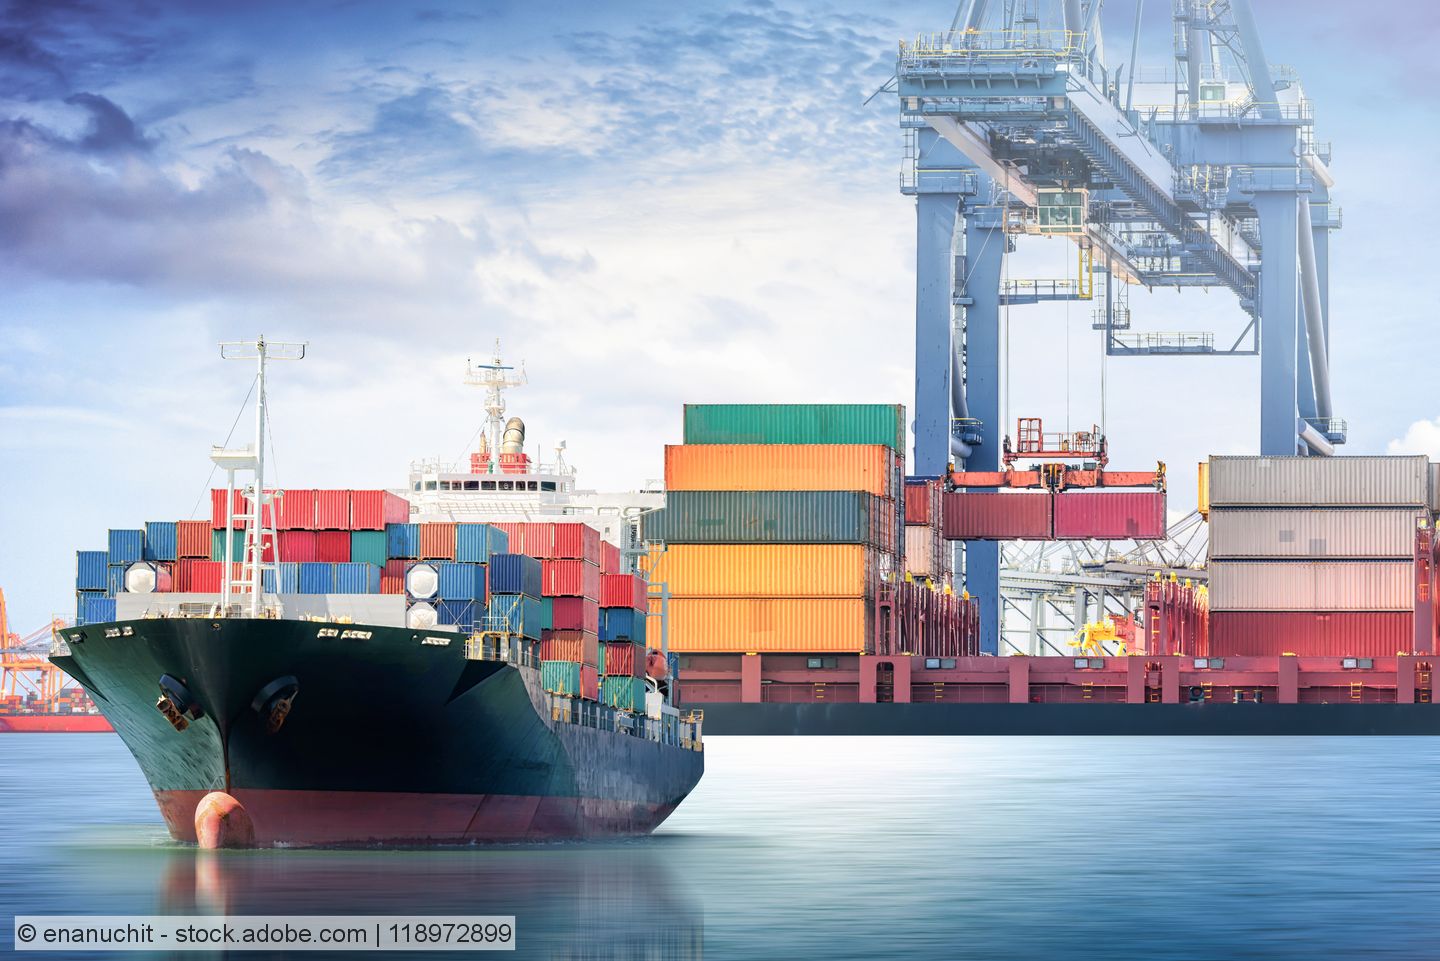 EBS-Verband erneuert Kritik an niederländischer Einfuhrsteuer